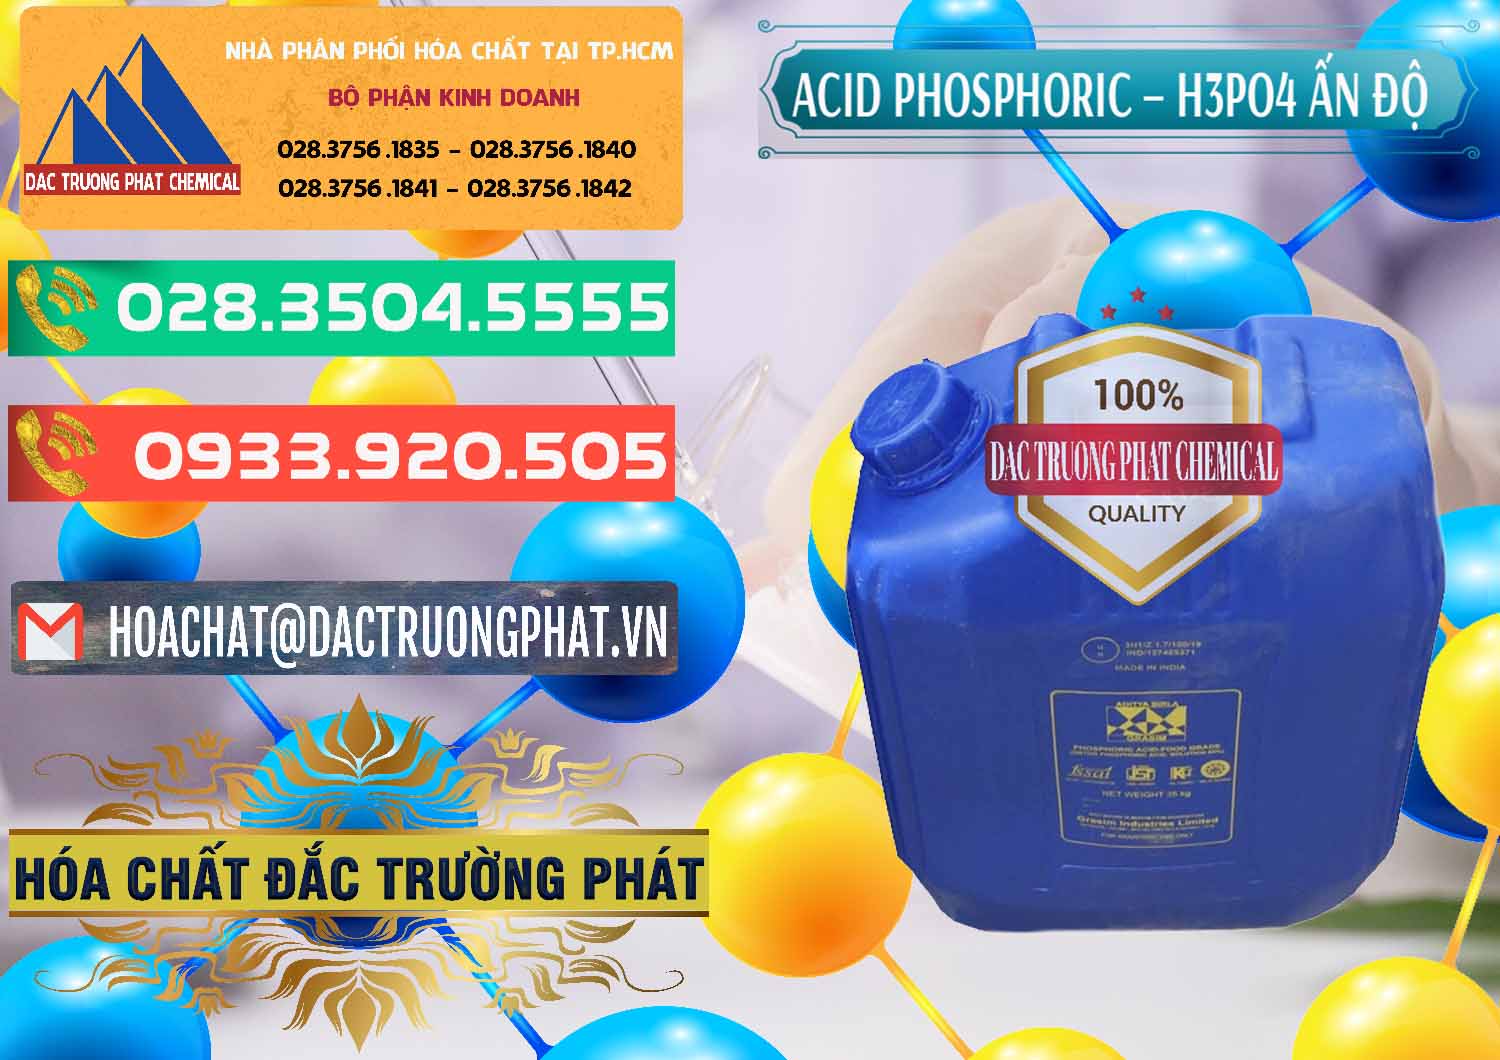 Cty chuyên bán _ cung ứng Axit Phosphoric H3PO4 85% Ấn Độ - 0350 - Chuyên nhập khẩu - phân phối hóa chất tại TP.HCM - congtyhoachat.com.vn